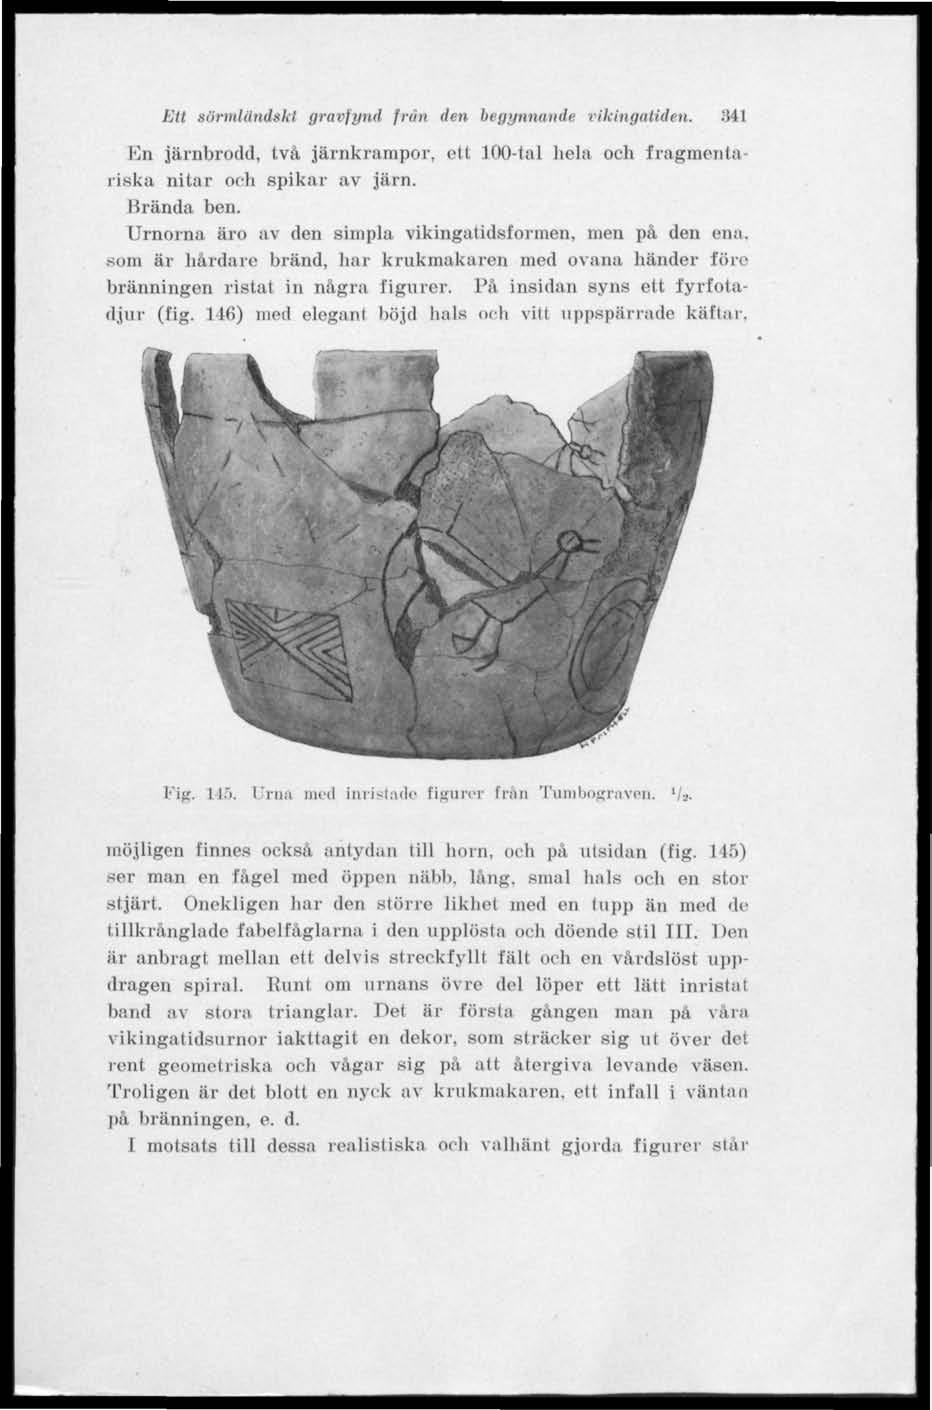 Ett sörmländskt gravfynd frun den begynnande vikingatiden. lon järnbrodd, två järnkrampor, ett 100-tal hela och fragmentariska nitar och spikar av järn. Brända ben.